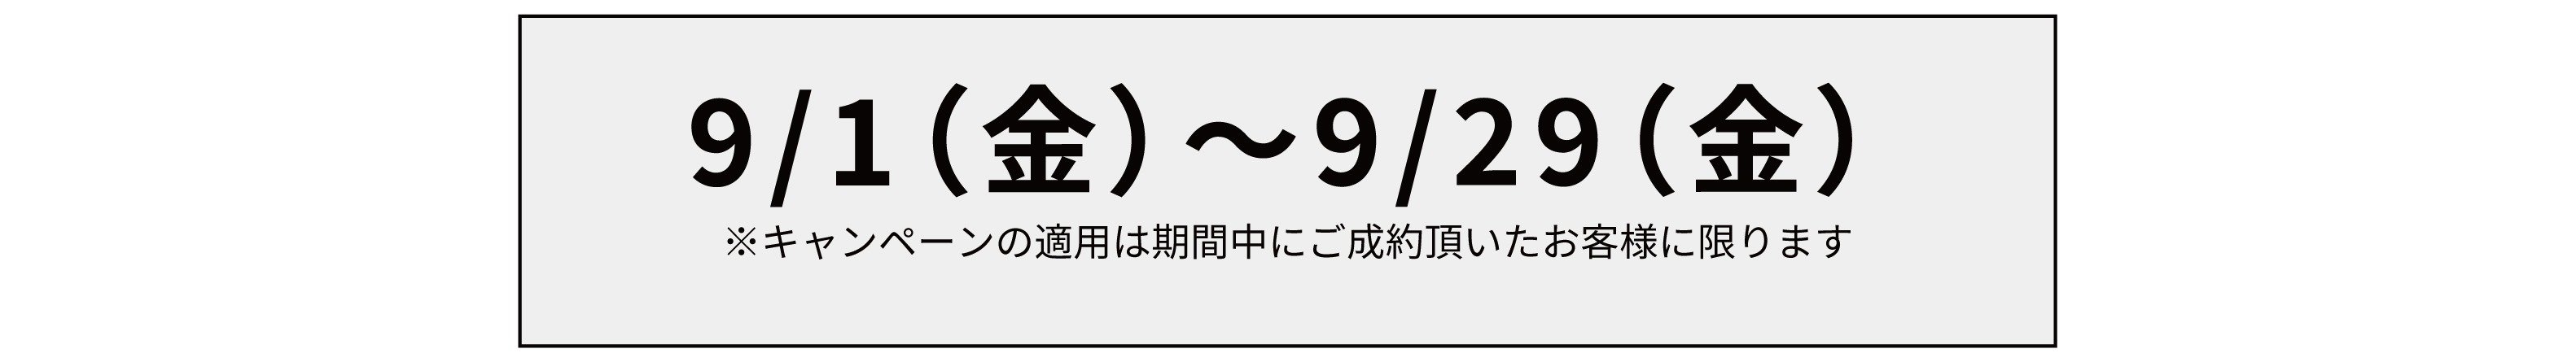 【9月限定】ハイスピードサービス半額キャンペーン